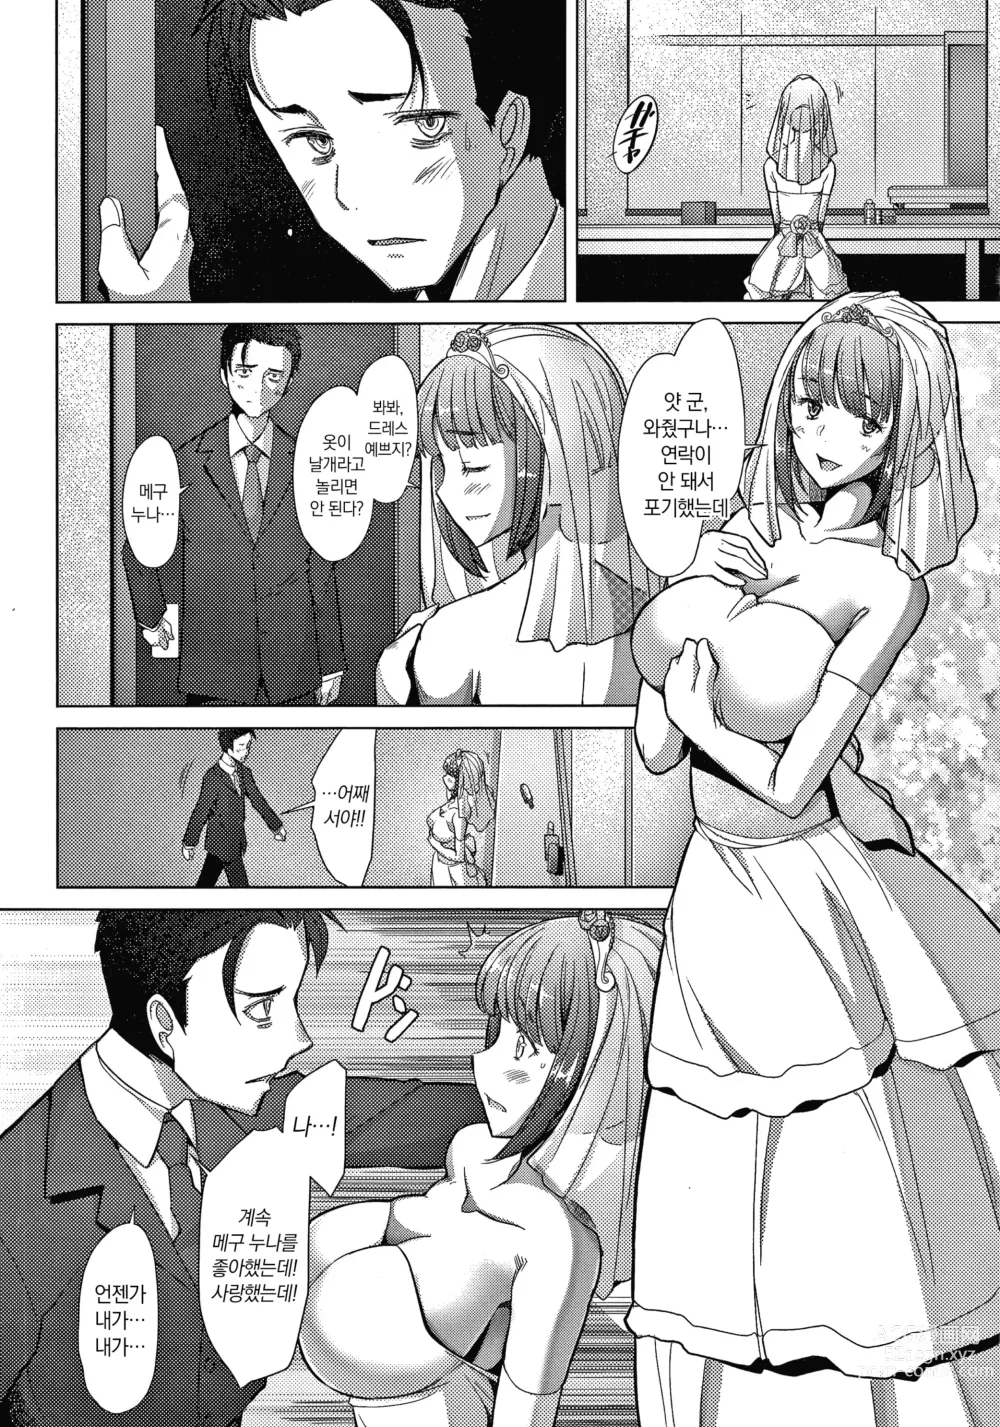 Page 7 of manga 유부녀도 사랑하고 싶어 ~노콘 수정으로 임신하고 싶은 유부녀들~